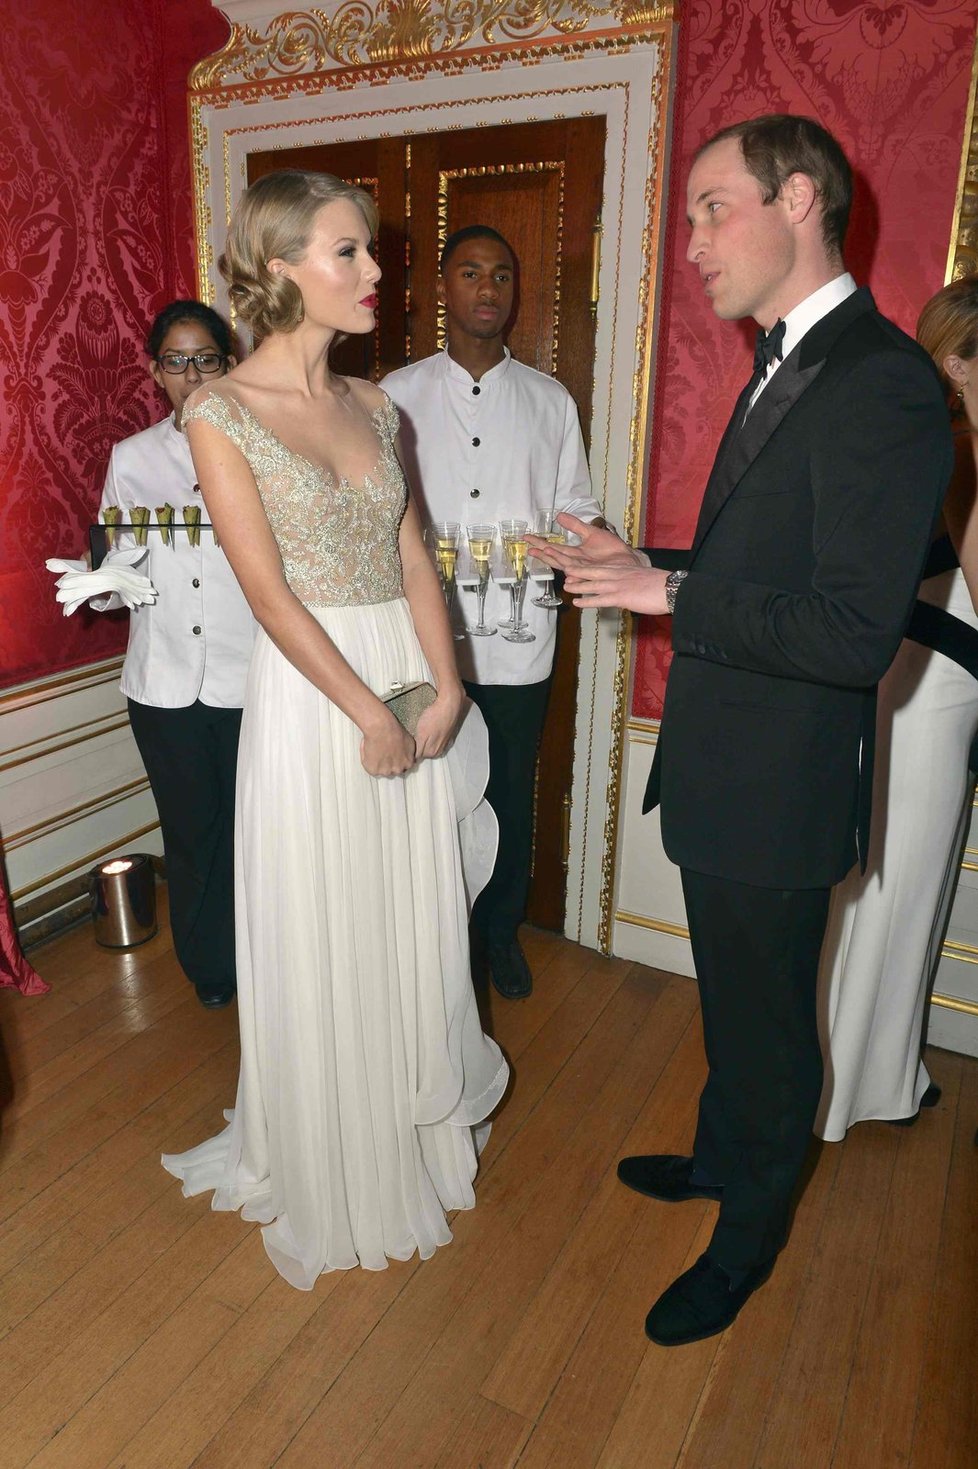 Taylor poprvé zpívala v paláci a hned před britským princem.